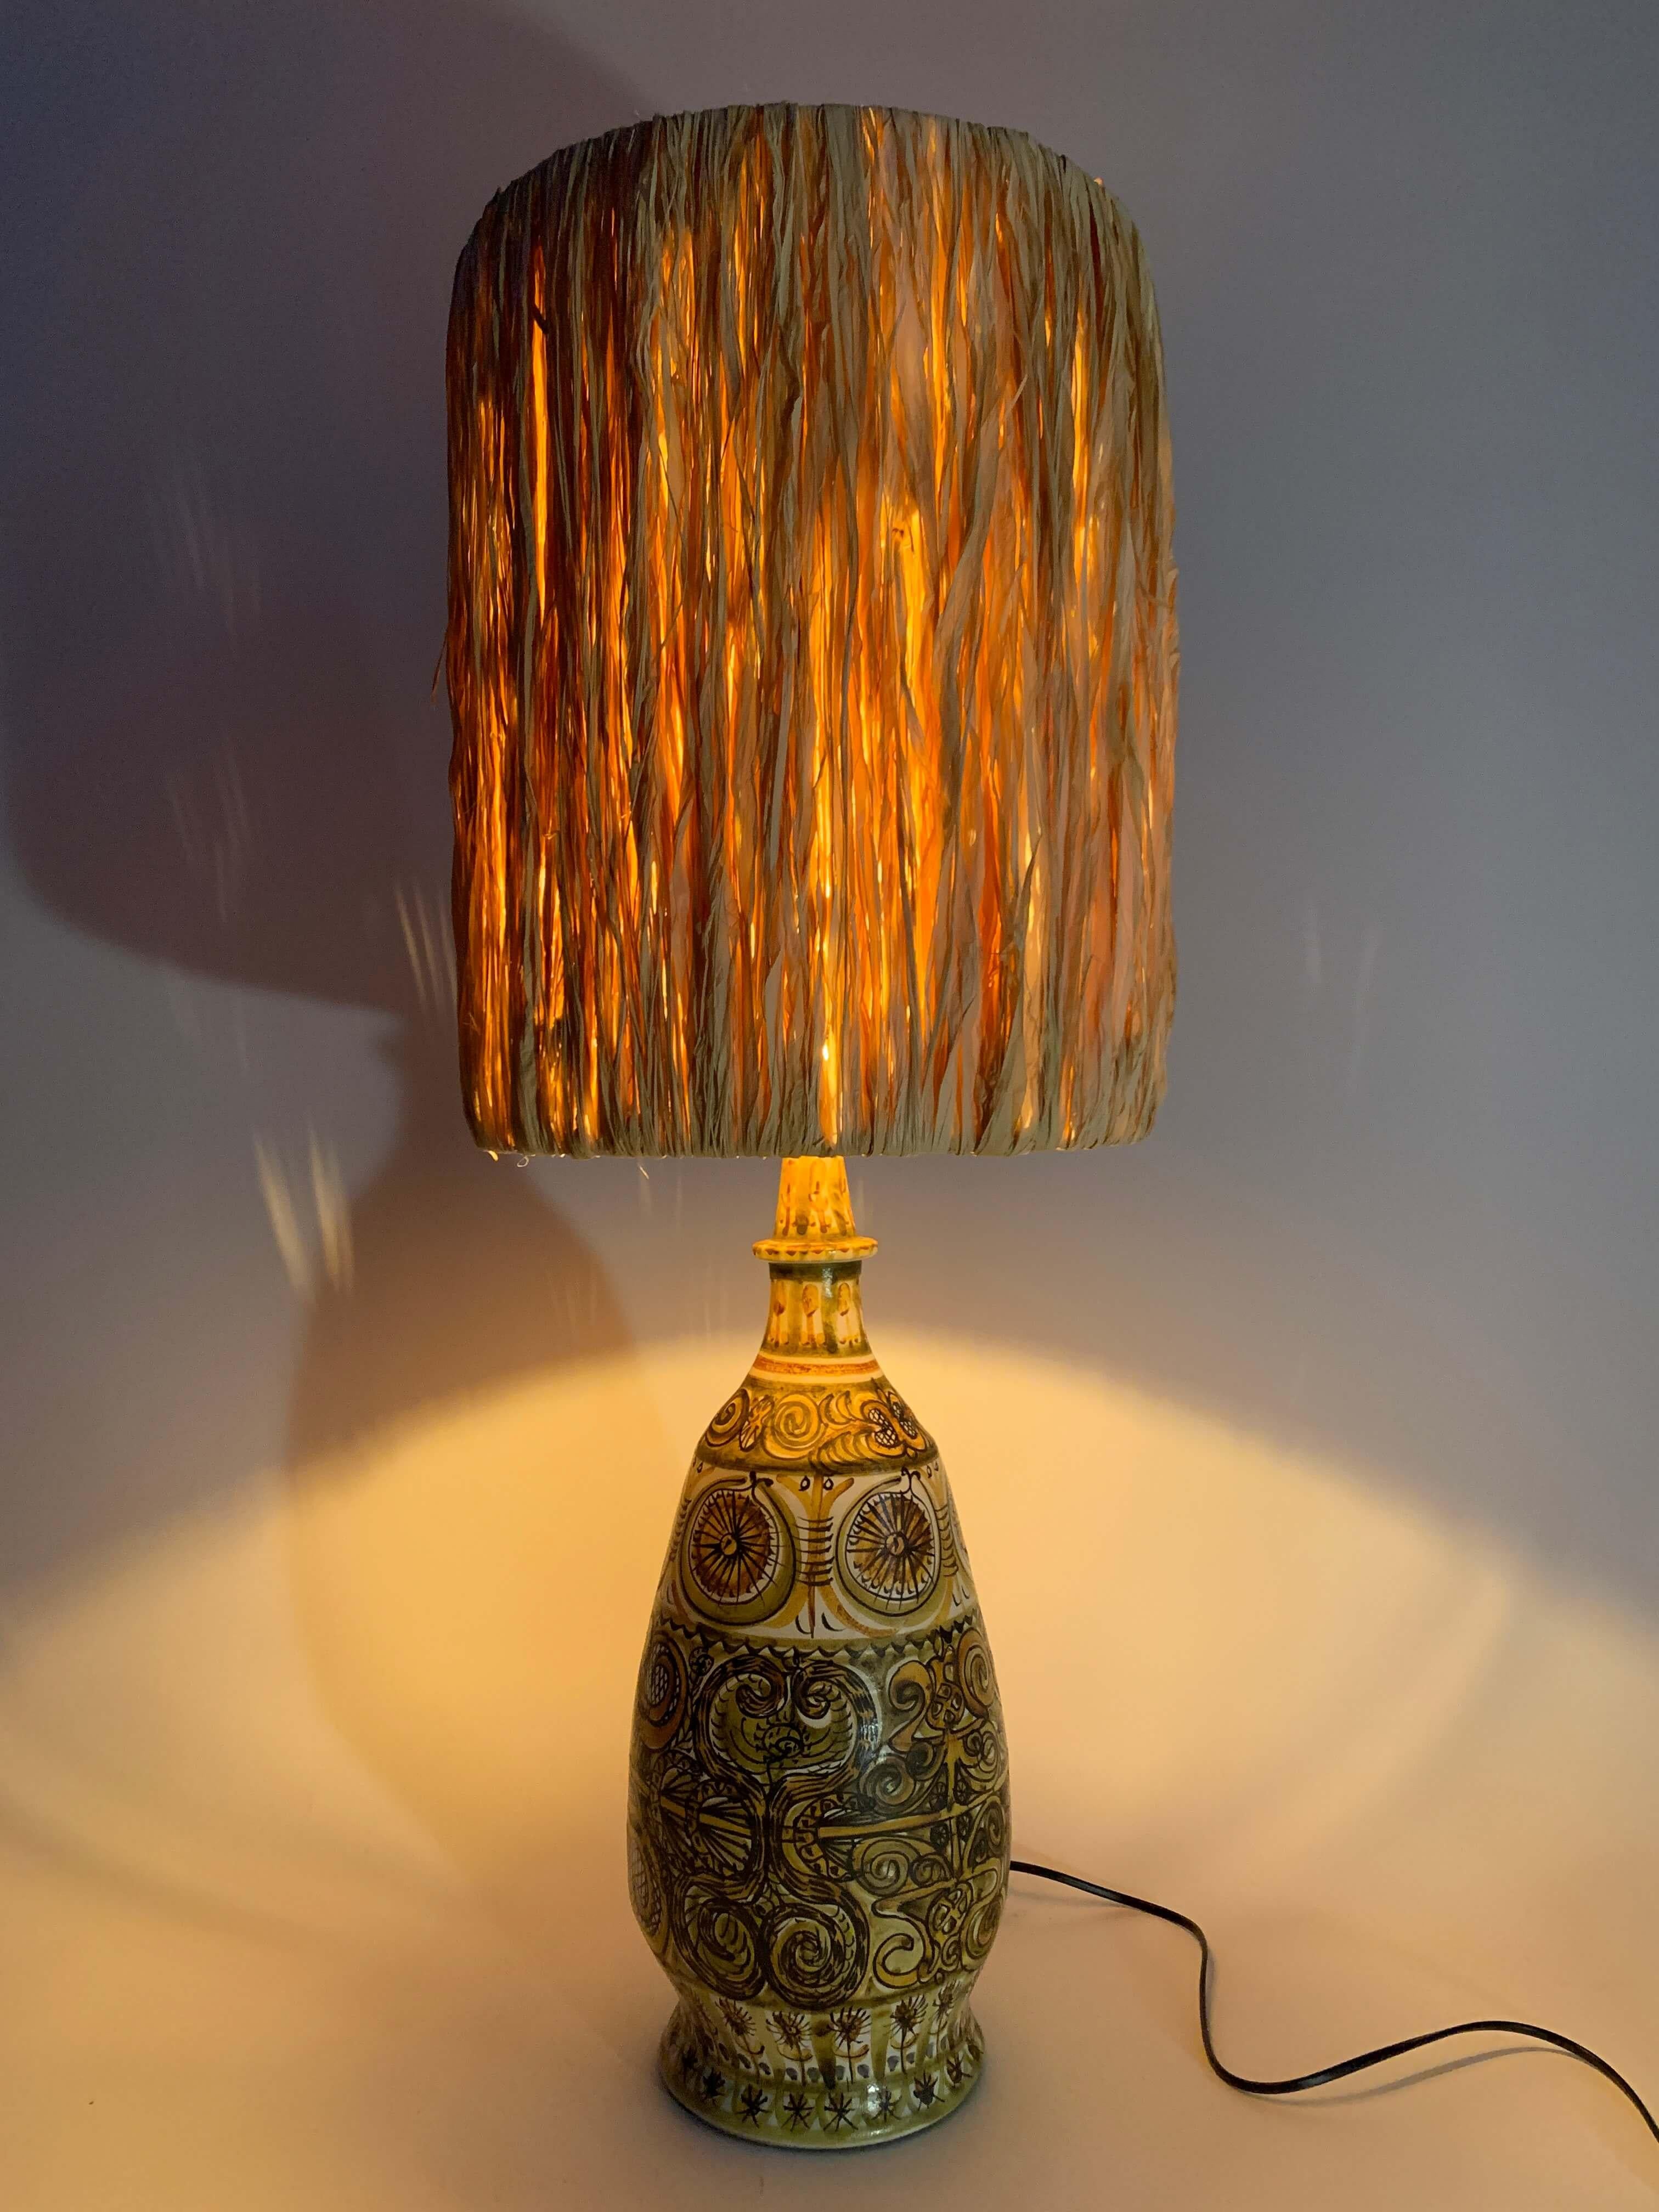 La majestueuse lampe en grès émaillé du peintre André HORELLOU témoigne de son savoir-faire, avec des palettes subtiles et un décor caractéristique qui lui est propre.
Pièce unique et l'une des plus grandes lampes de table existantes de